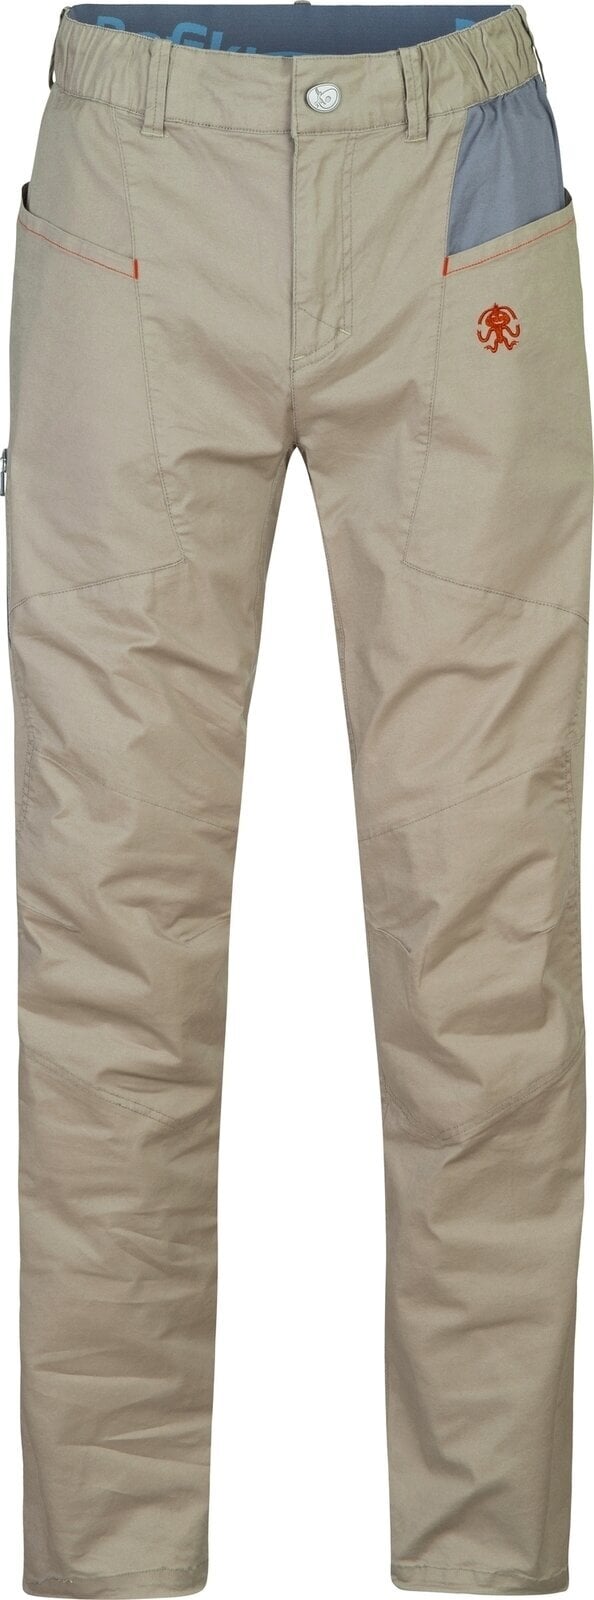 Outdoorové kalhoty Rafiki Crag Man Pants Brindle/Ink L Outdoorové kalhoty